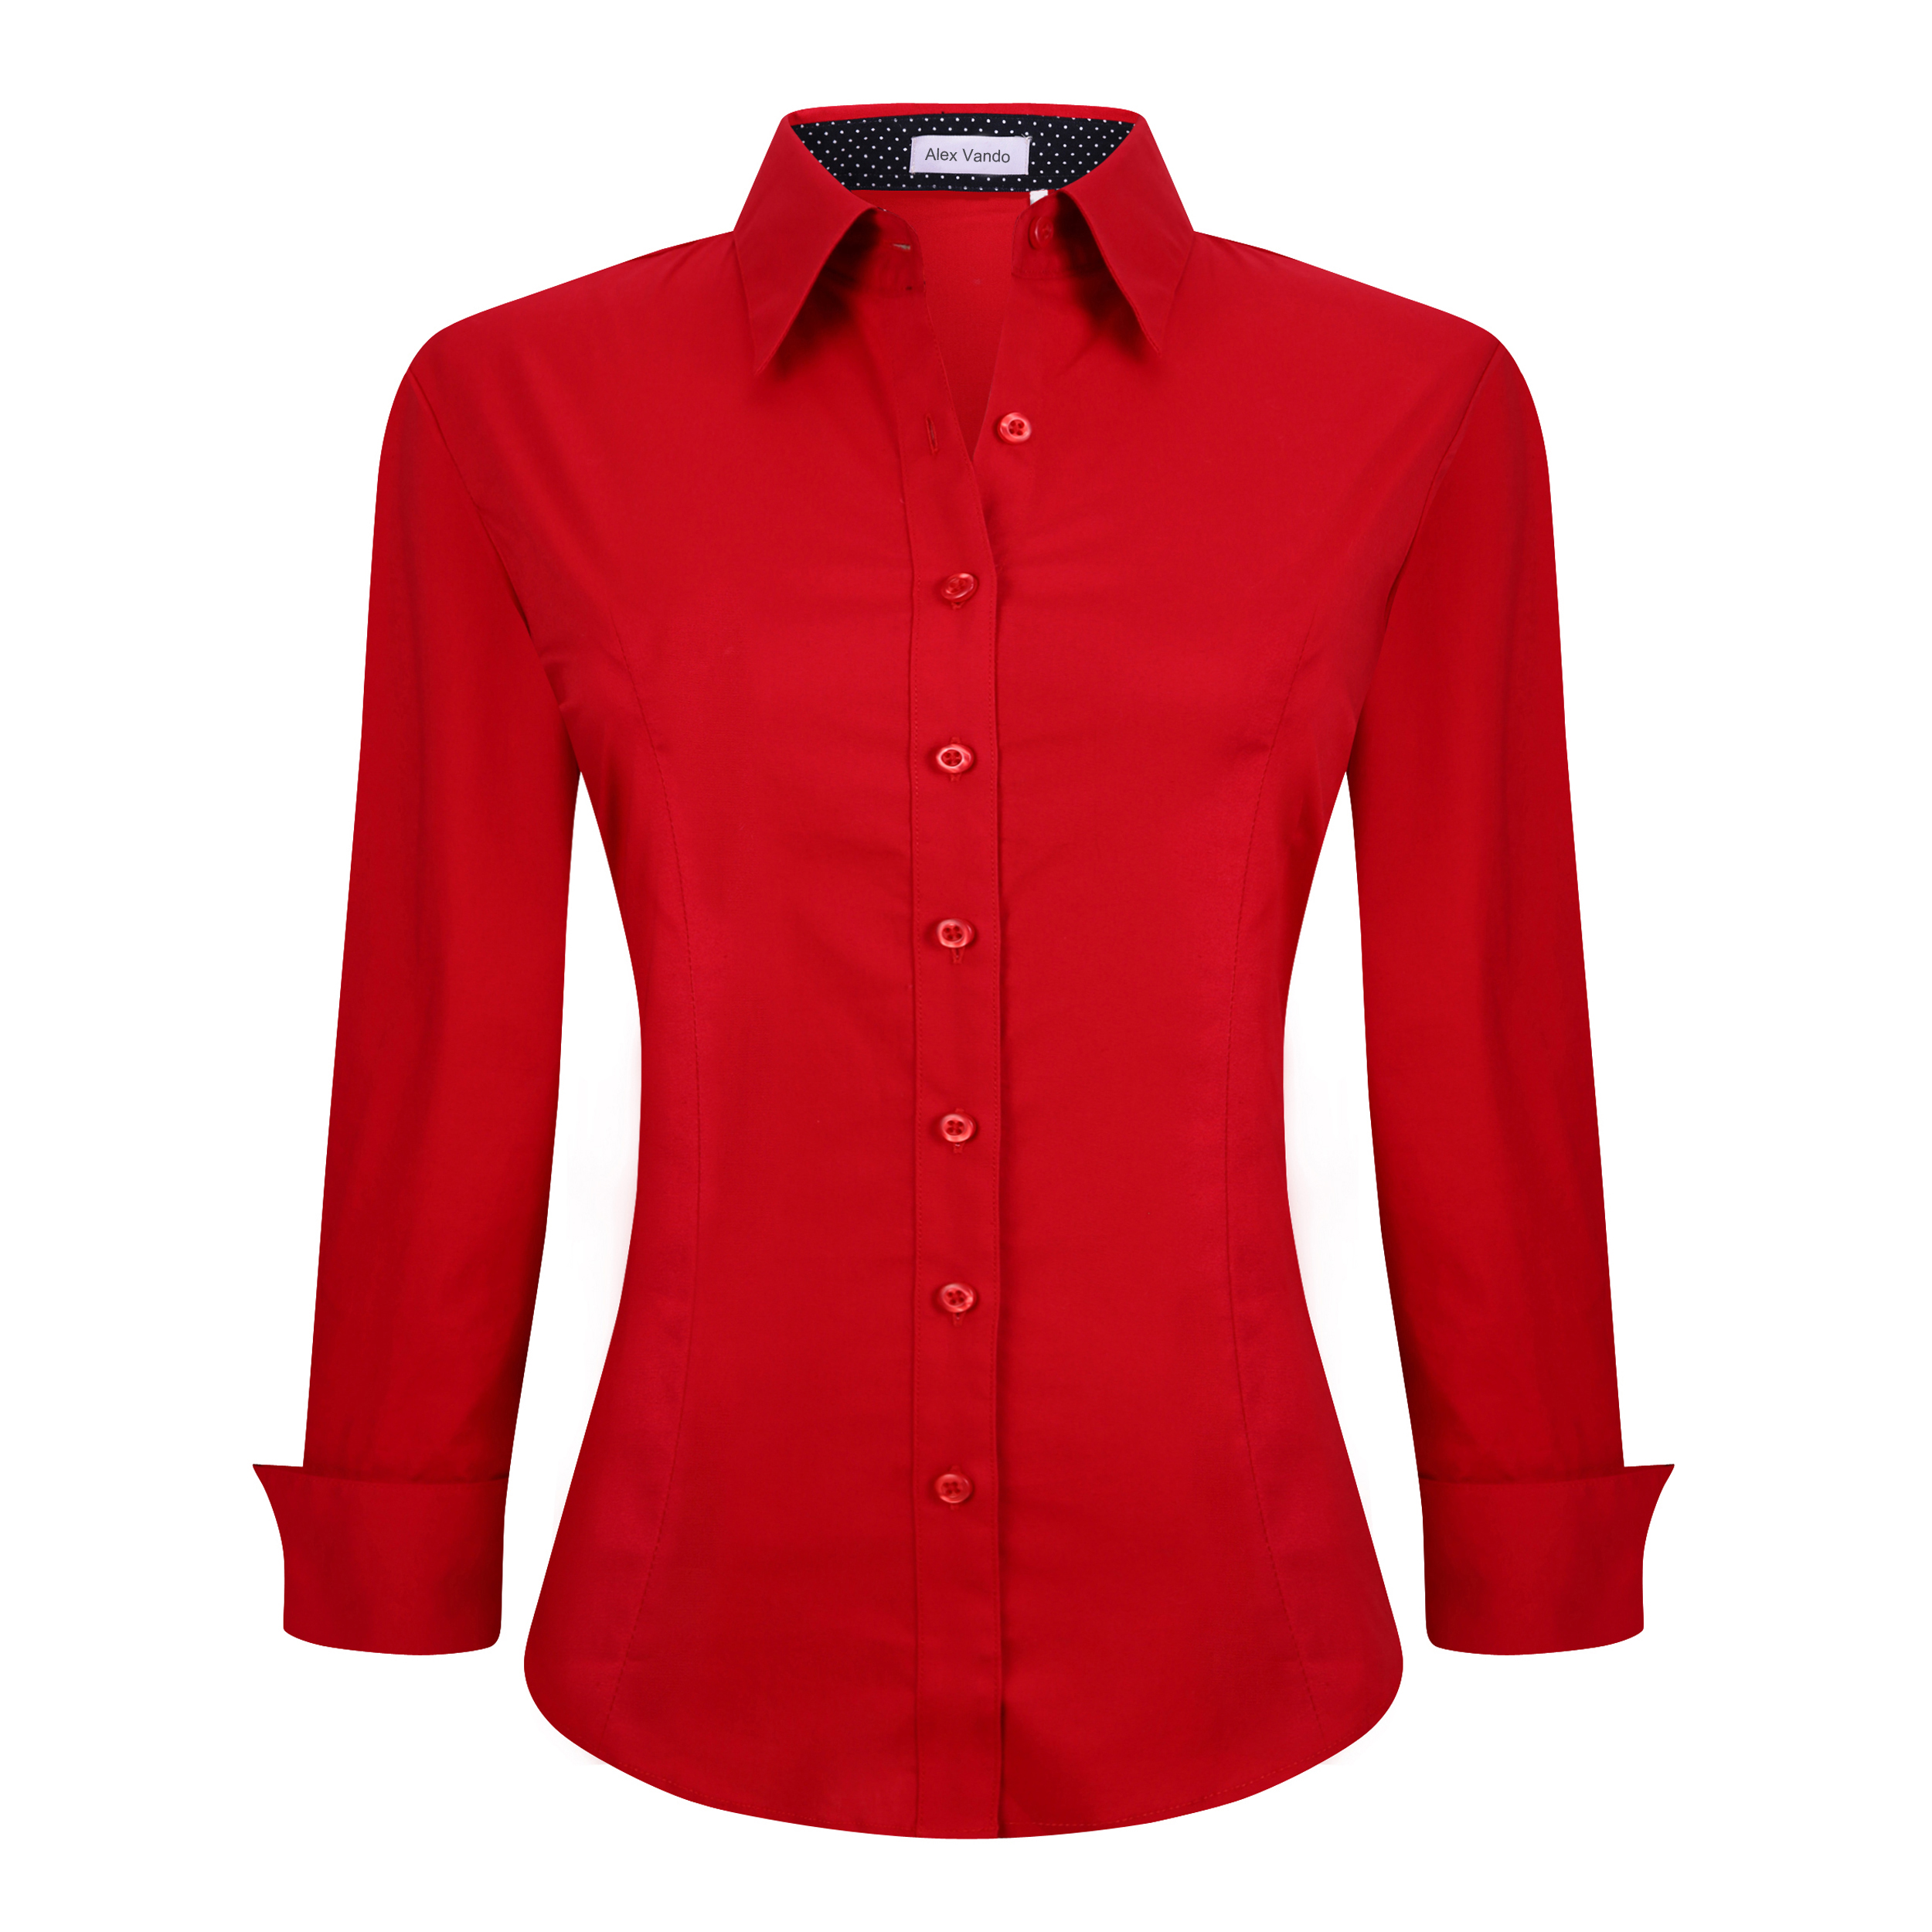 red dress shirt womens